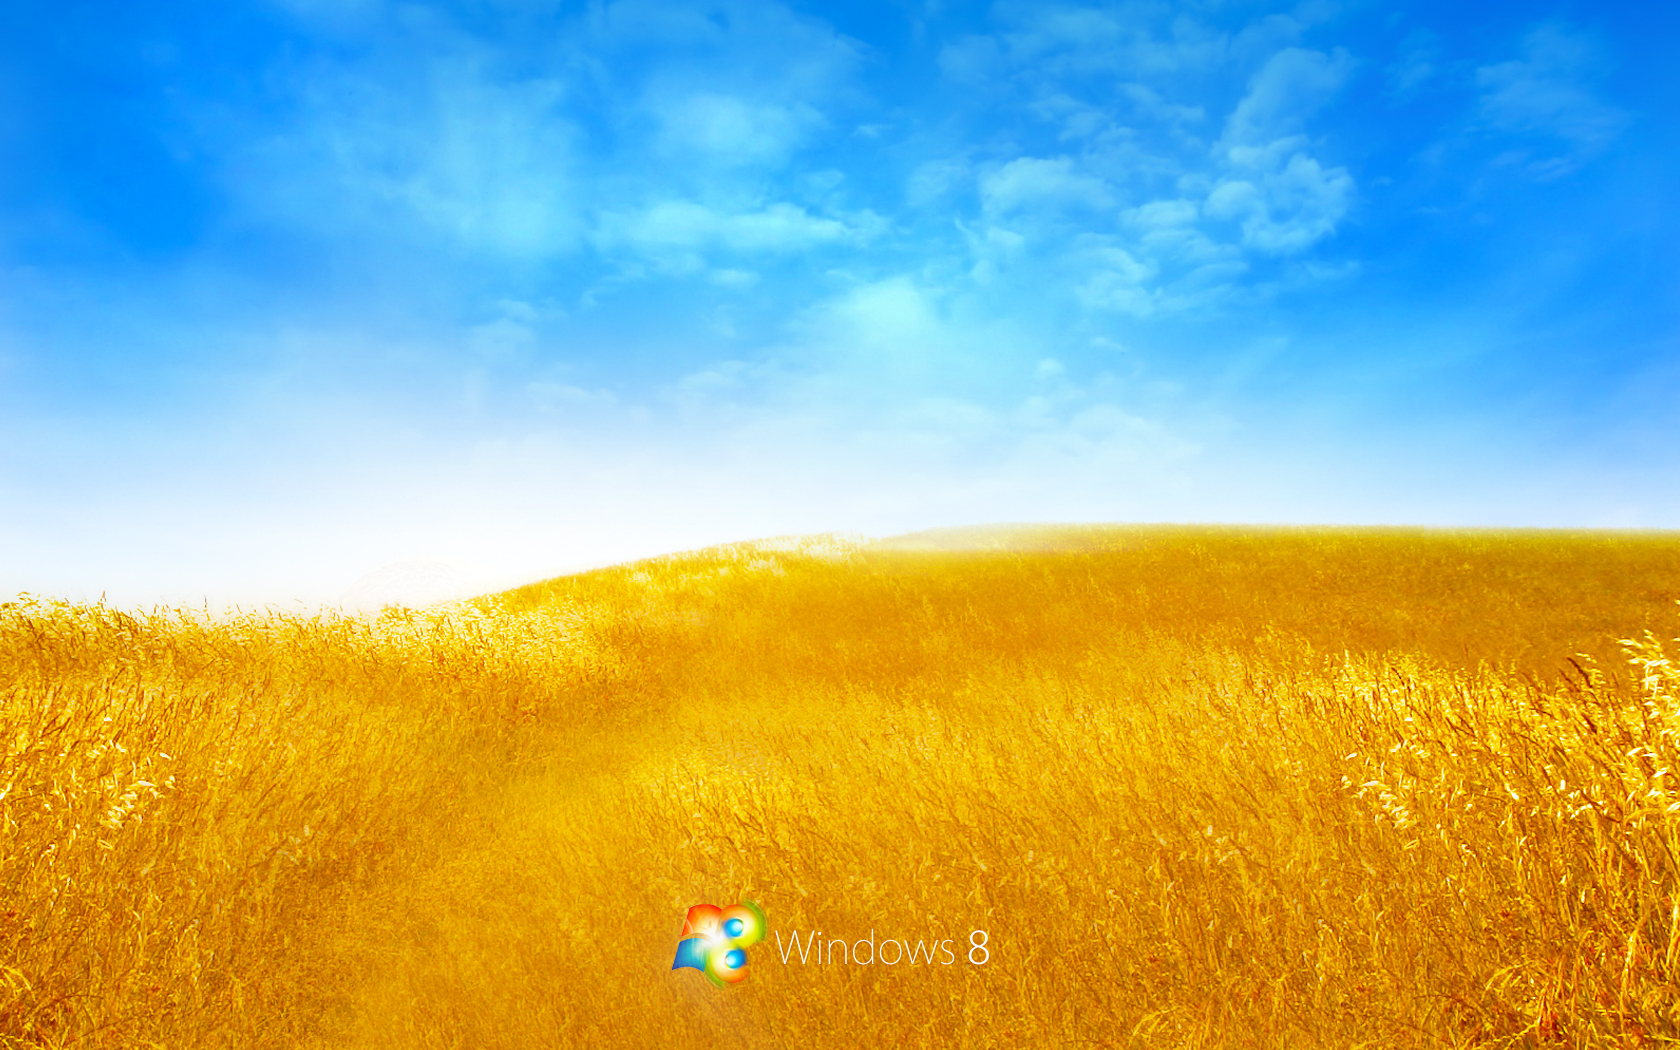 4K Live Wallpaper Windows 10 - WallpaperSafari